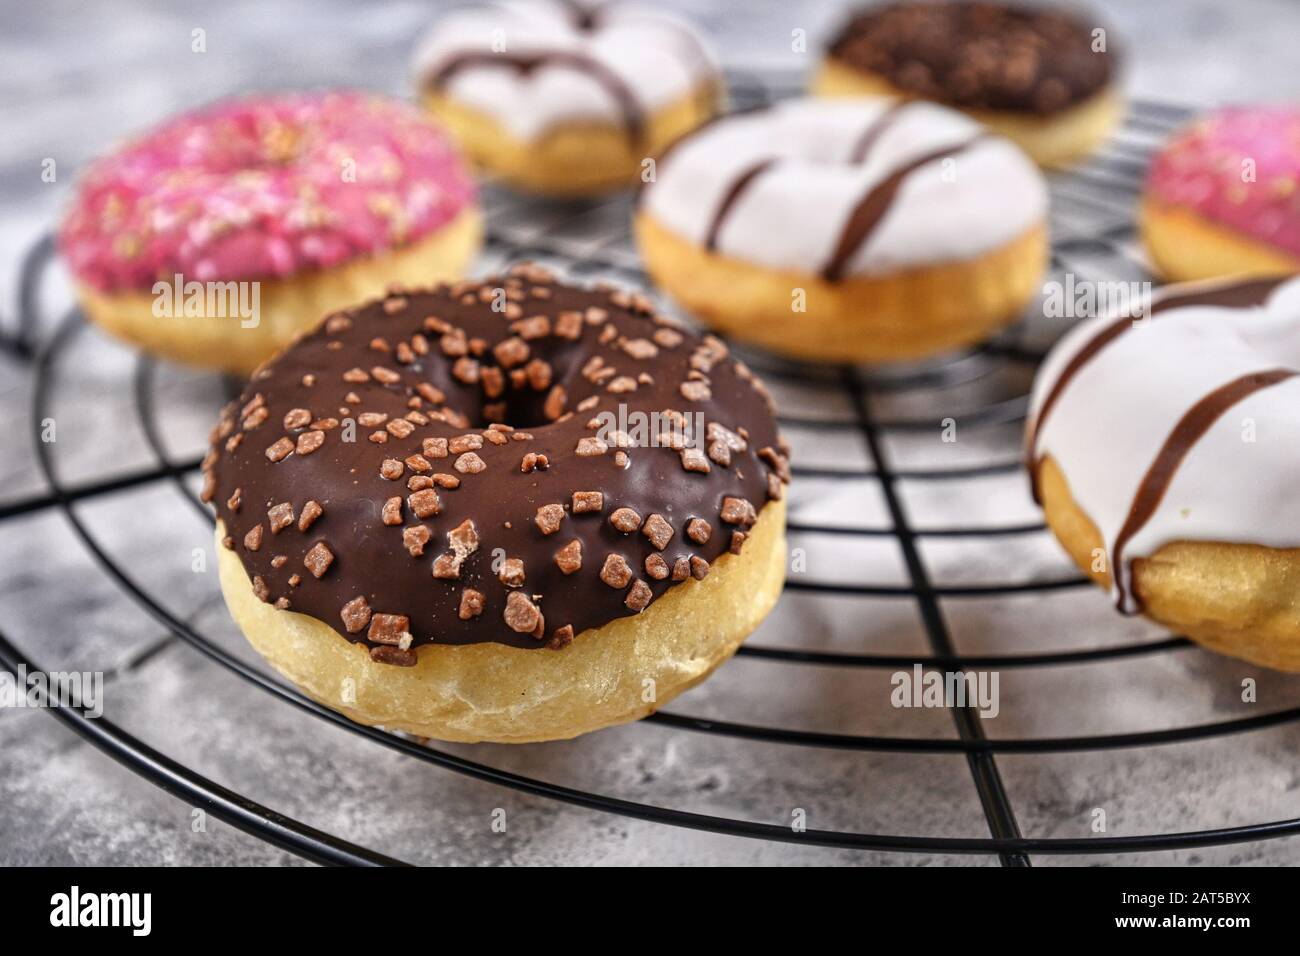 Boulangerie savoureux avec anneau chocolat brun et saupoudre de vitrage sur grille à gâteau avec d'autres donuts colorés en arrière-plan Banque D'Images